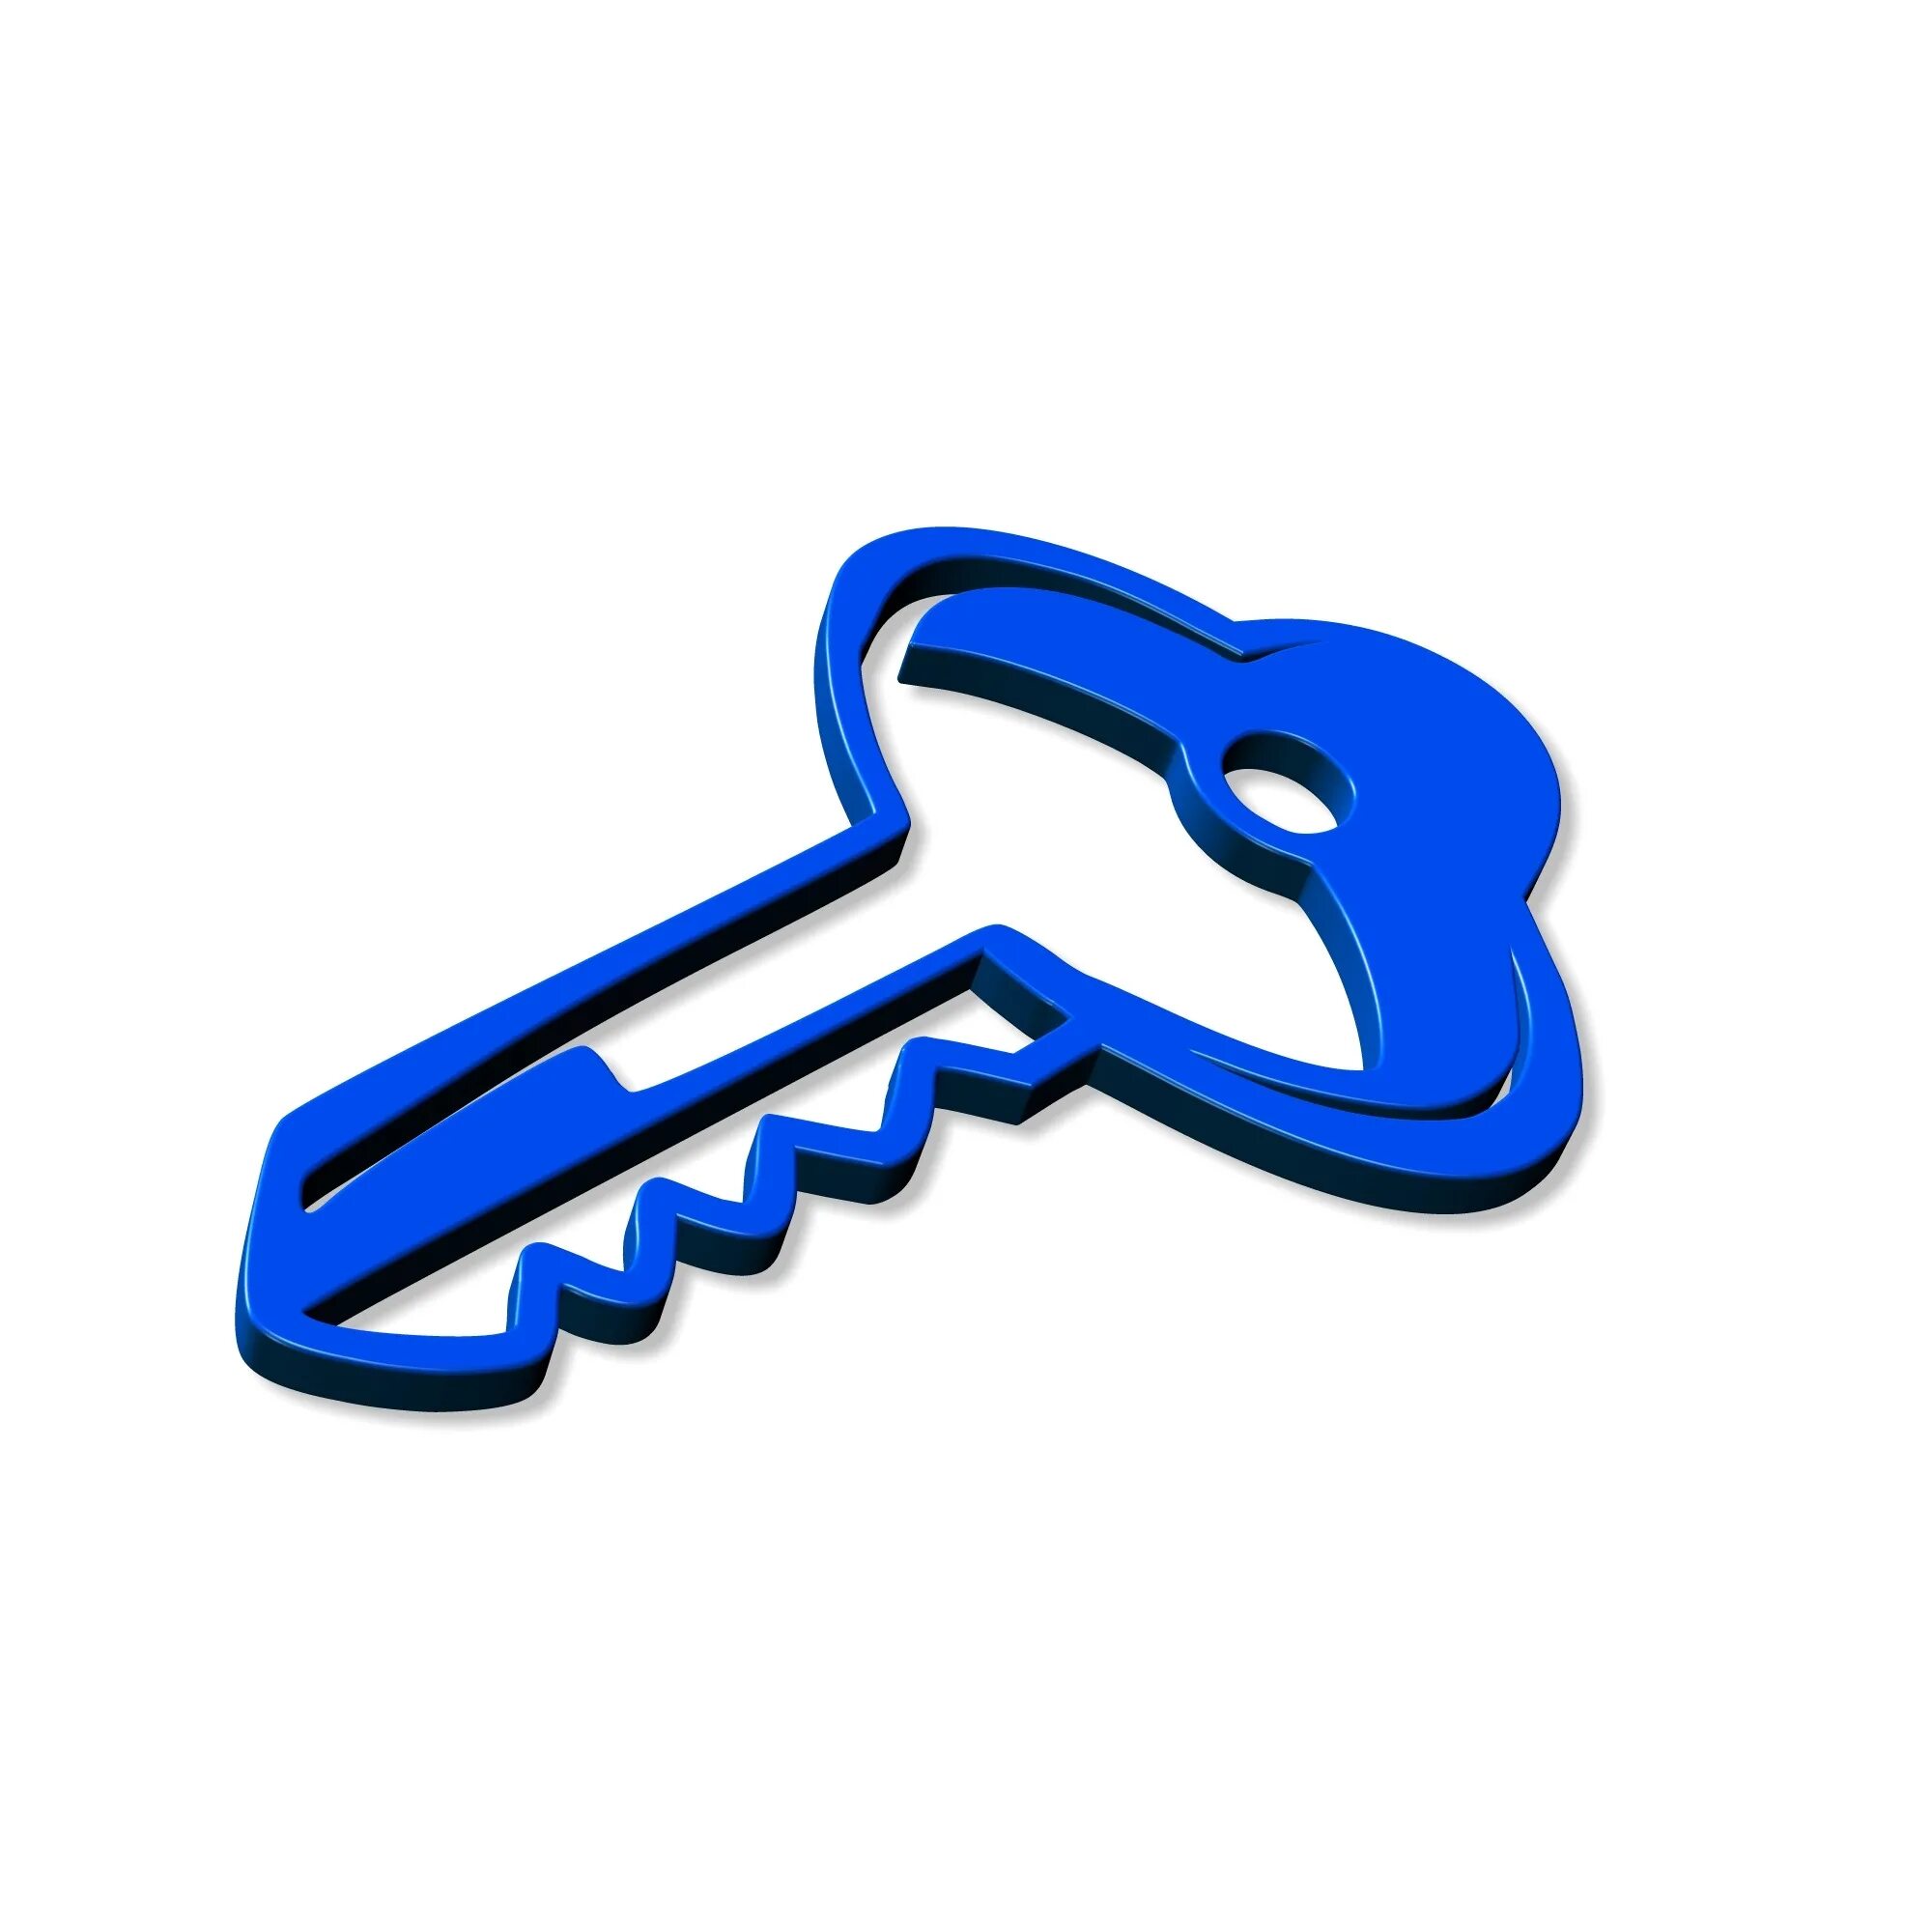 Покажи картинку ключ. Ключ. Ключ иллюстрация. Синий ключ. Ключ для дошкольников.